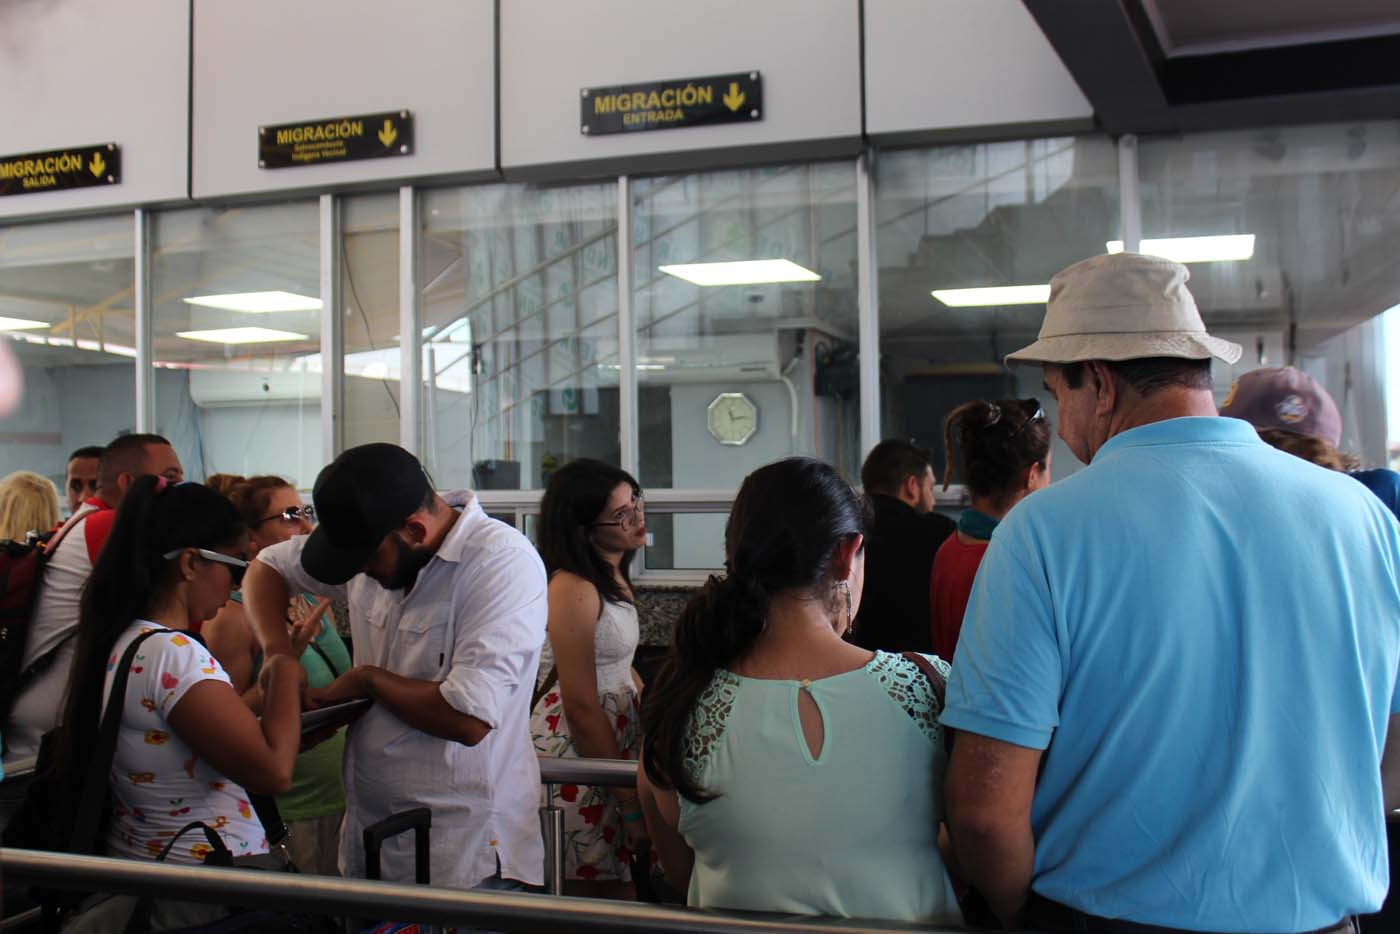 La OIM abre una línea de atención para inmigrantes venezolanos en Costa Rica